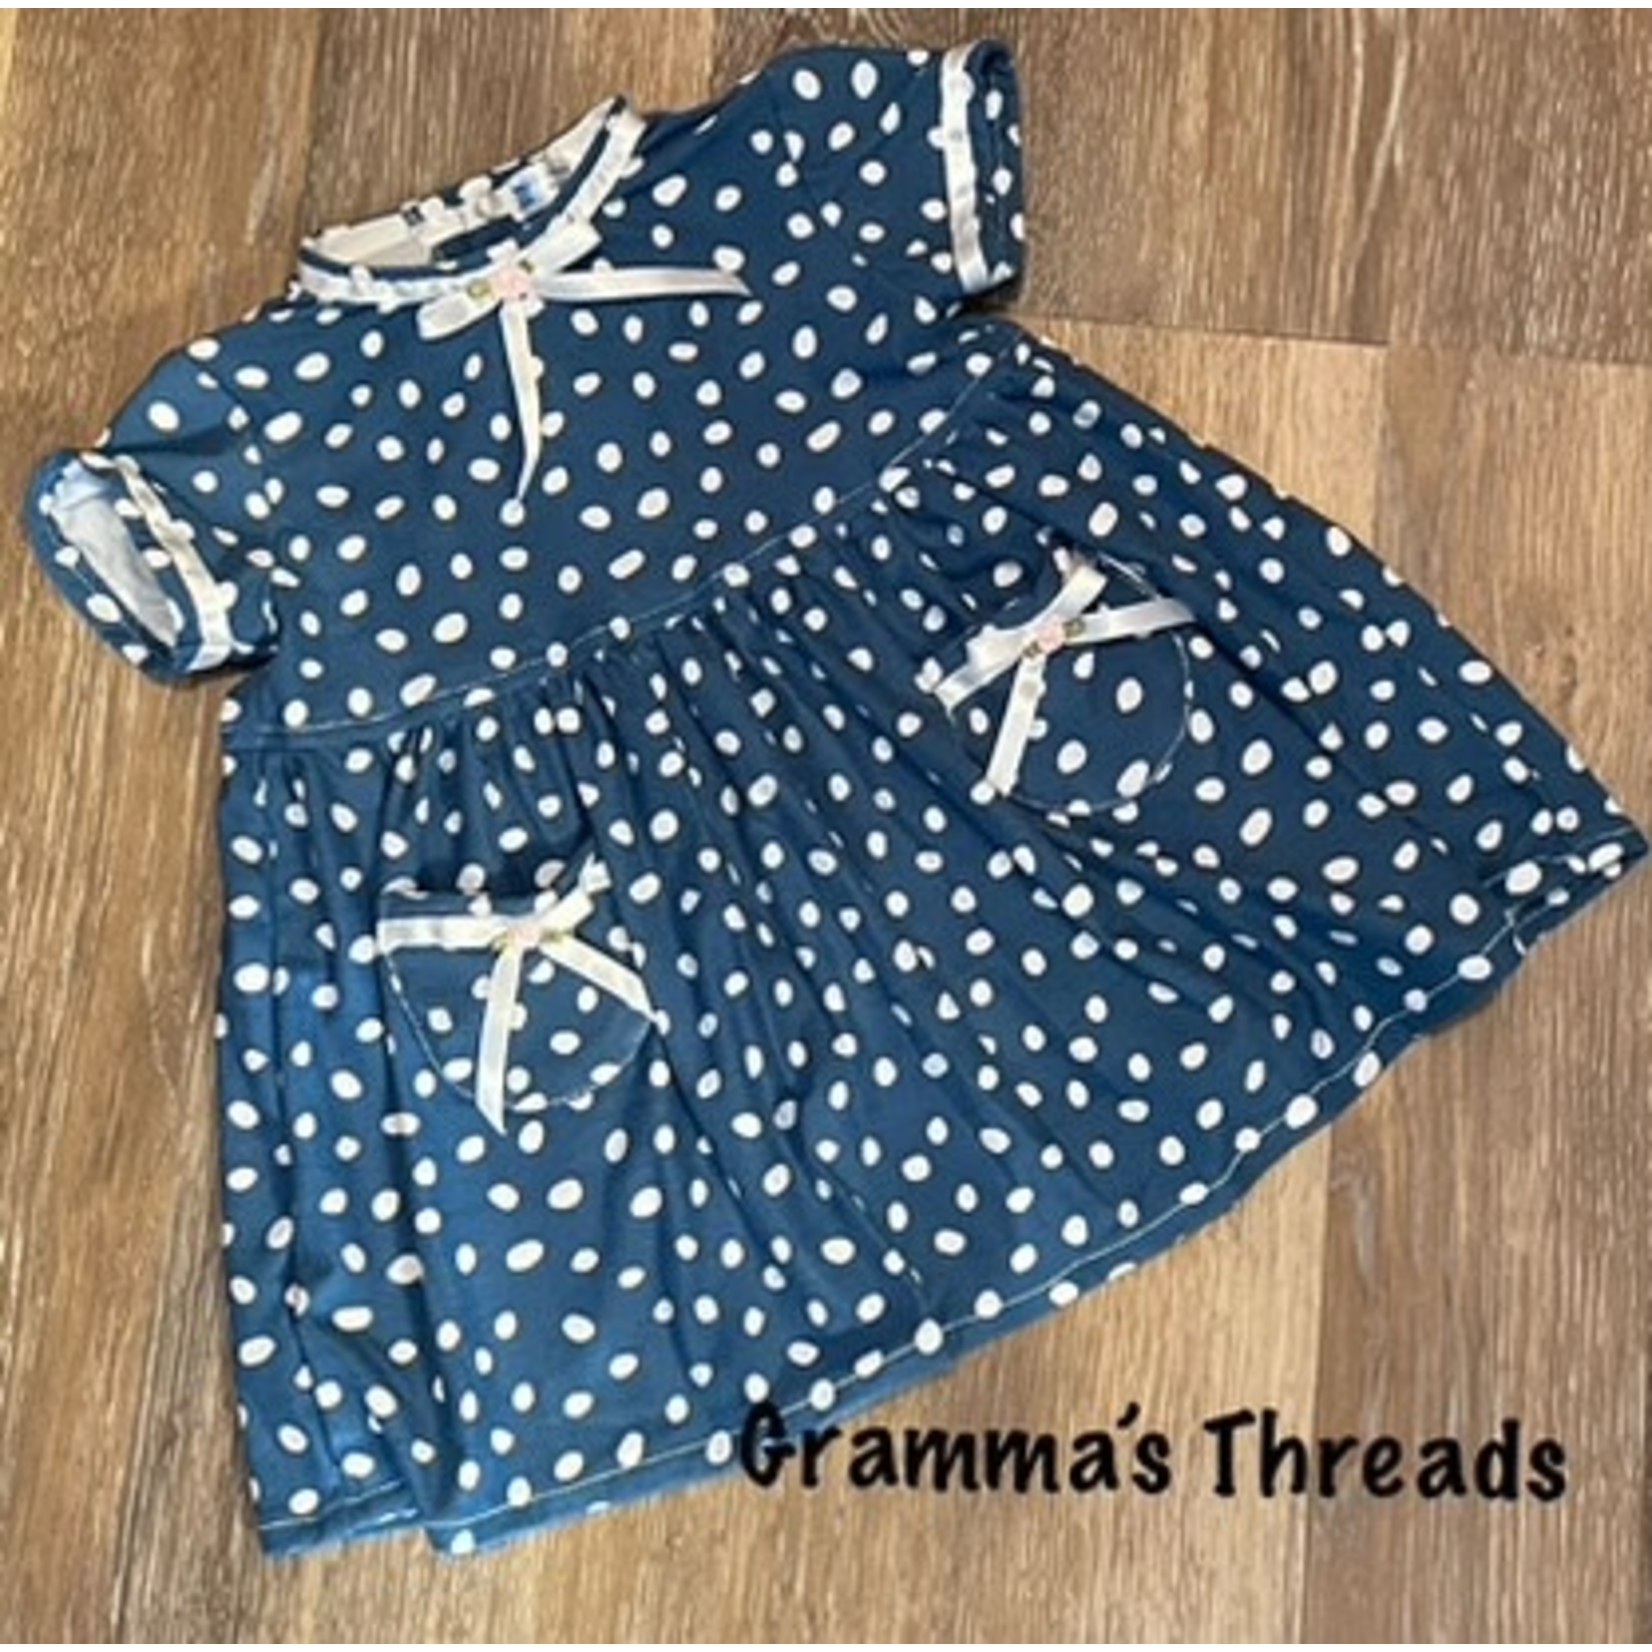 Gramma's Threads Short Sleeve Dress